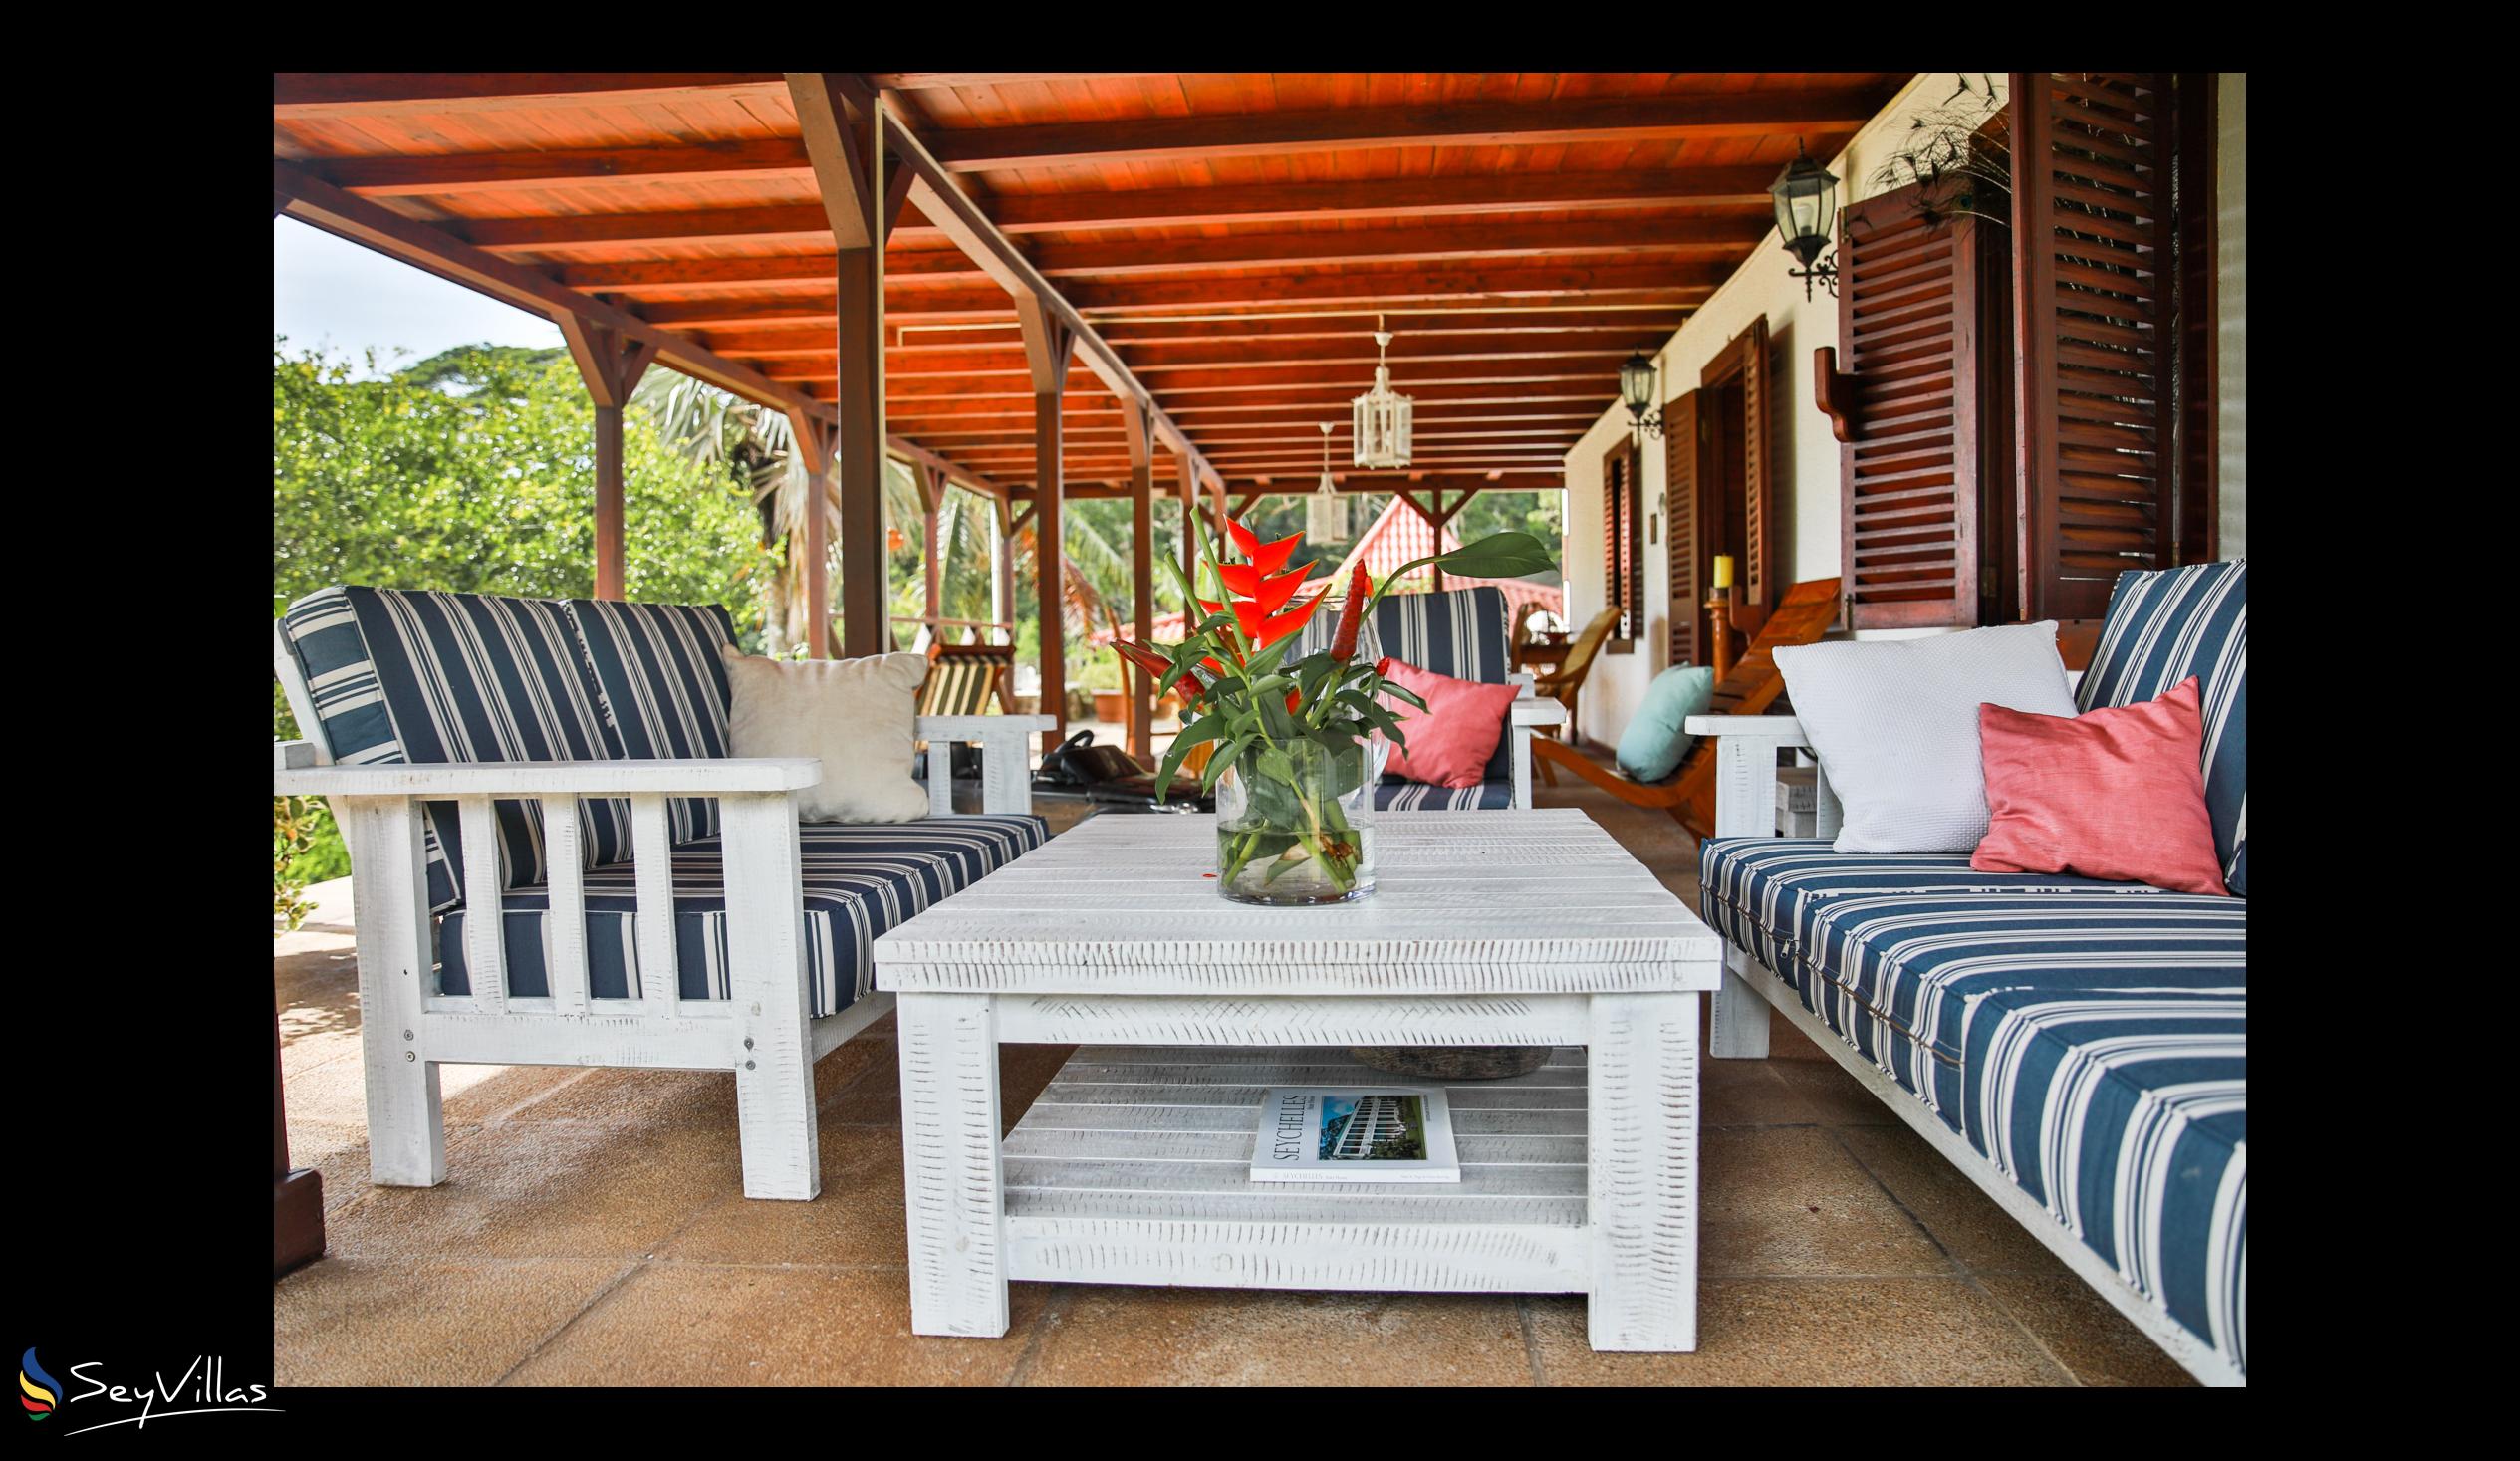 Photo 19: Domaine Desaubin Luxury Villas - Outdoor area - Mahé (Seychelles)